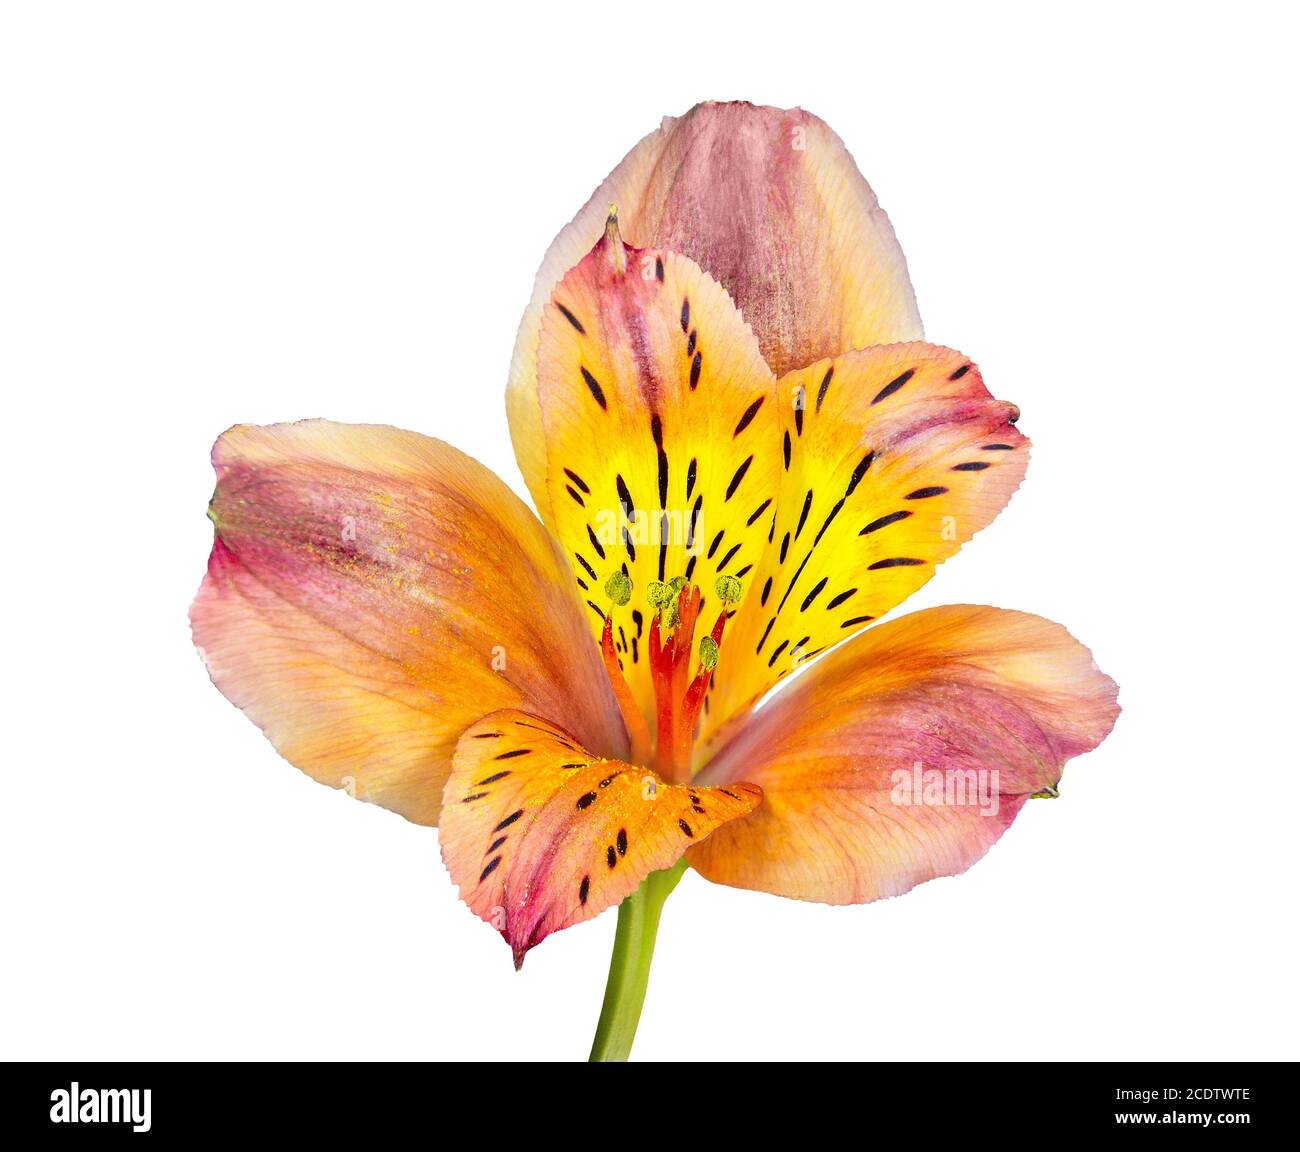 Fleur blanche au pistil jaune Banque d'images détourées - Alamy